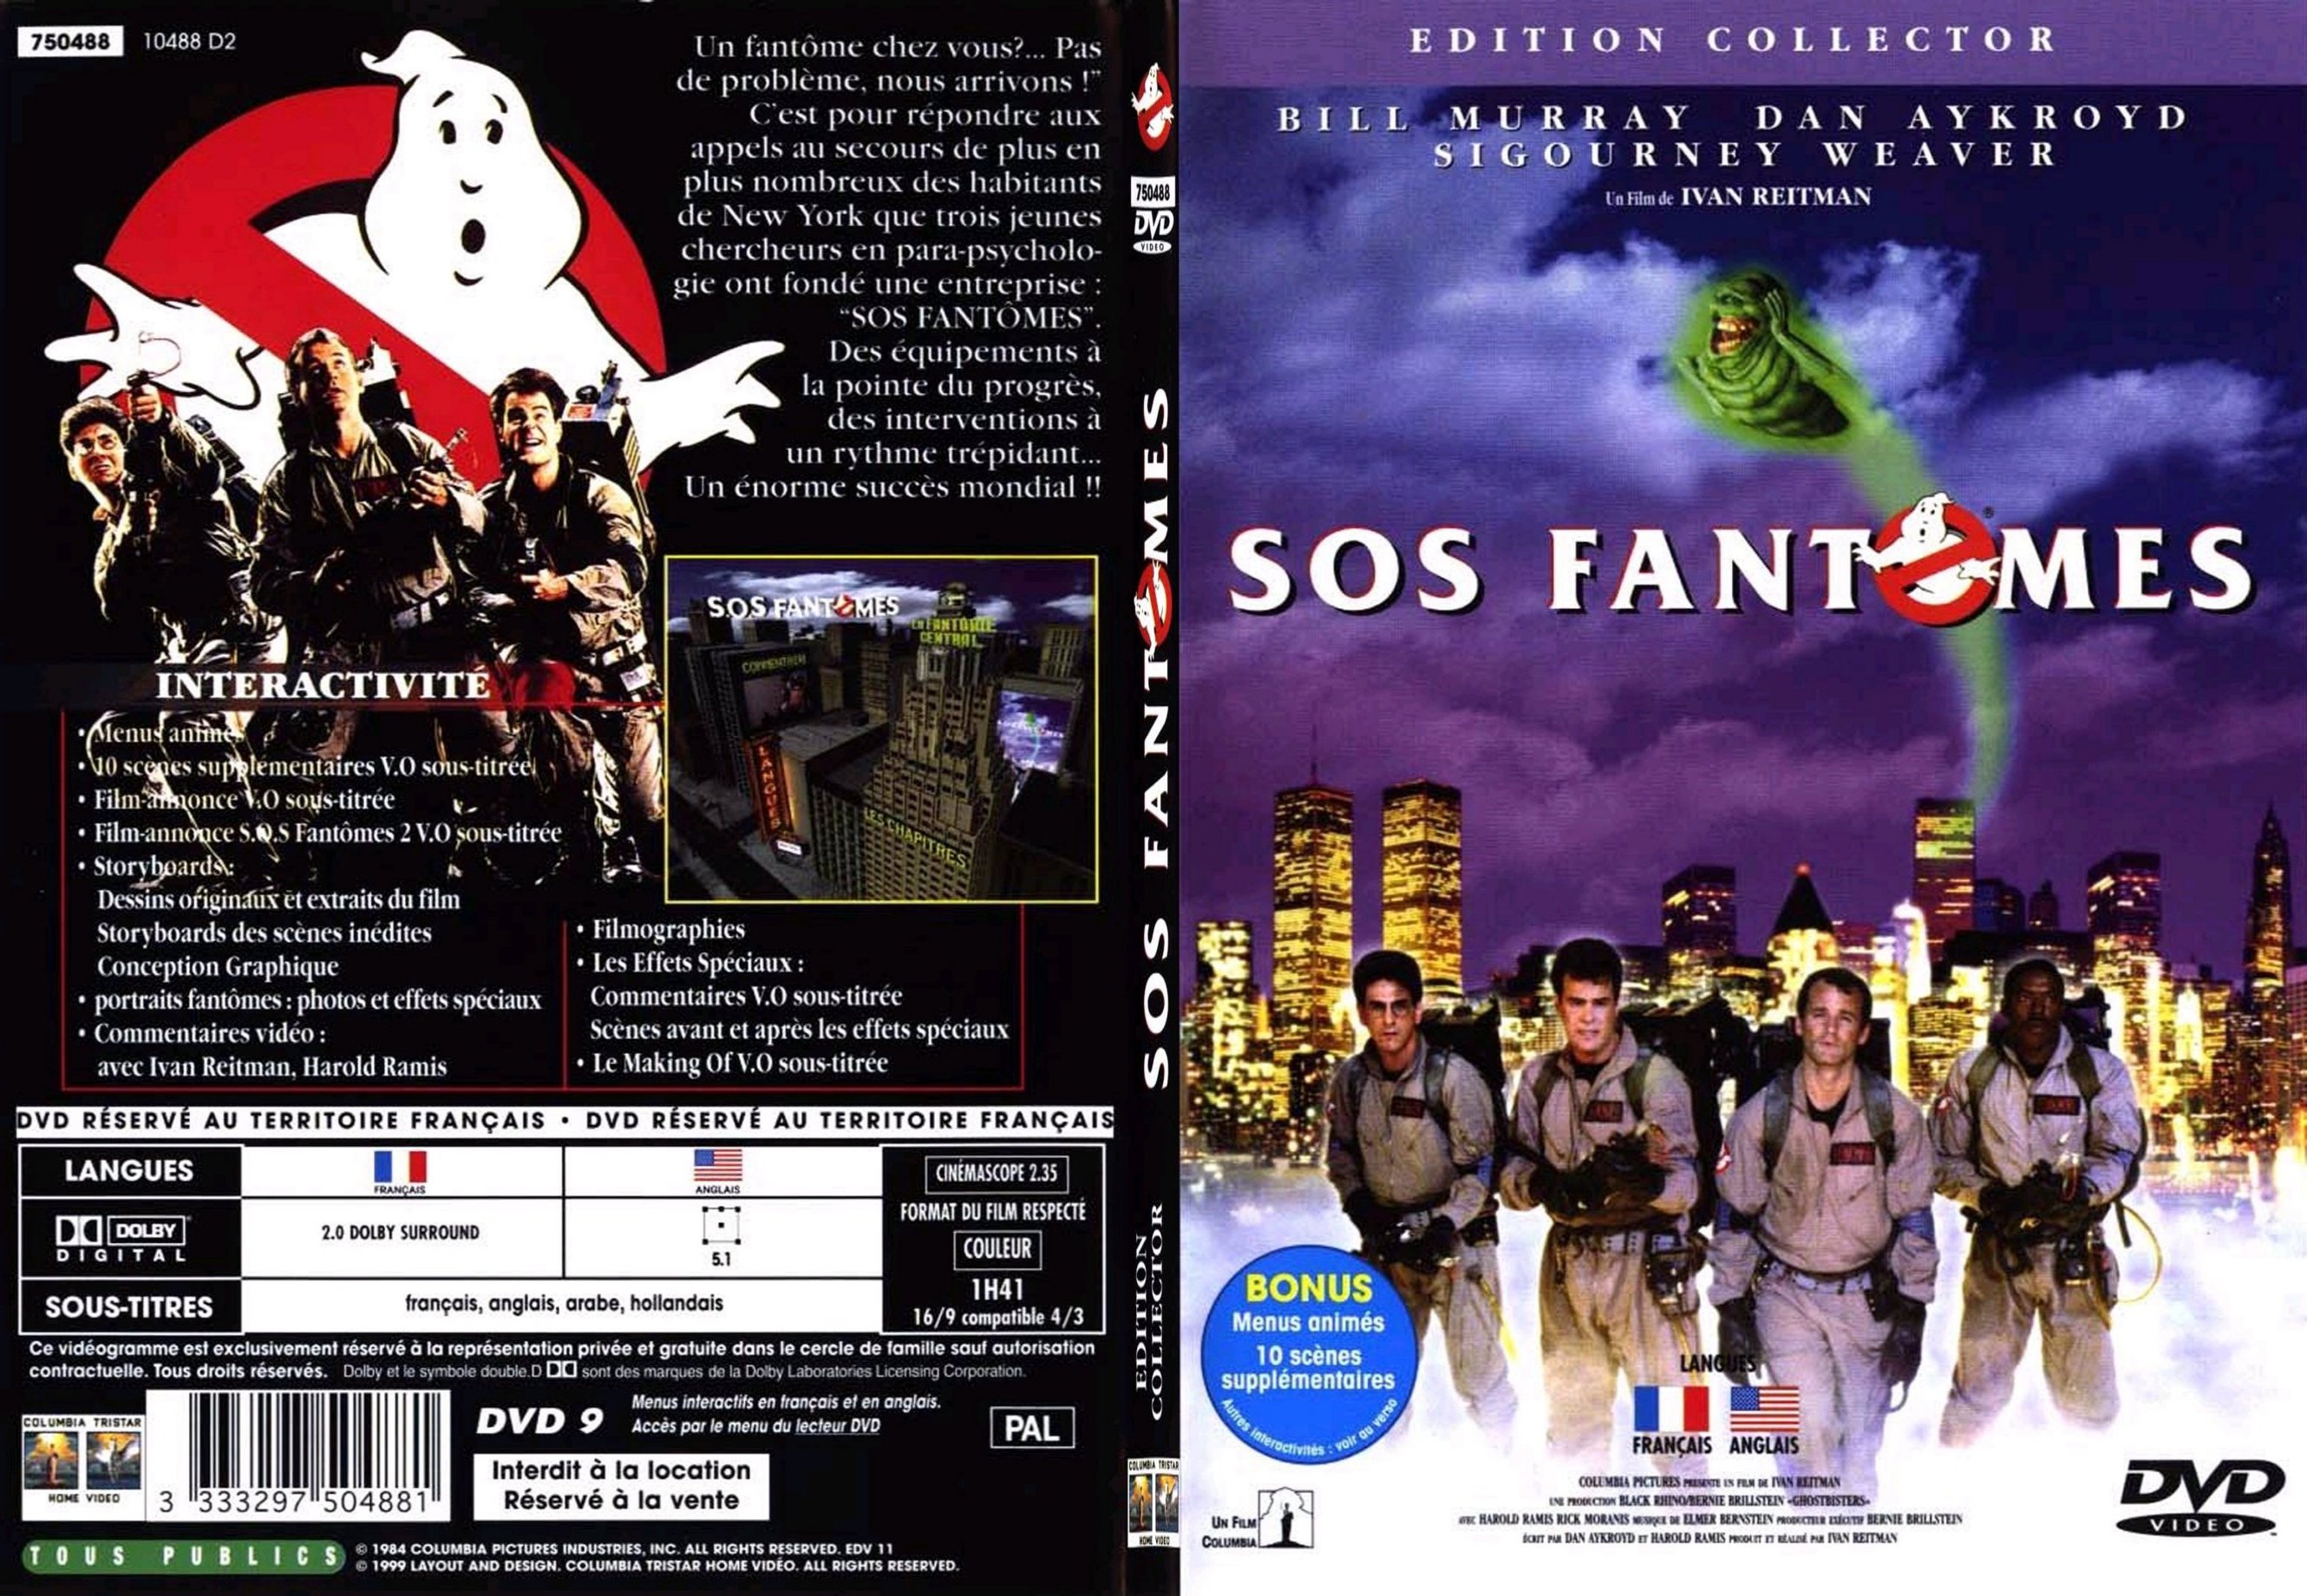 Jaquette DVD SOS Fantomes v2 - SLIM